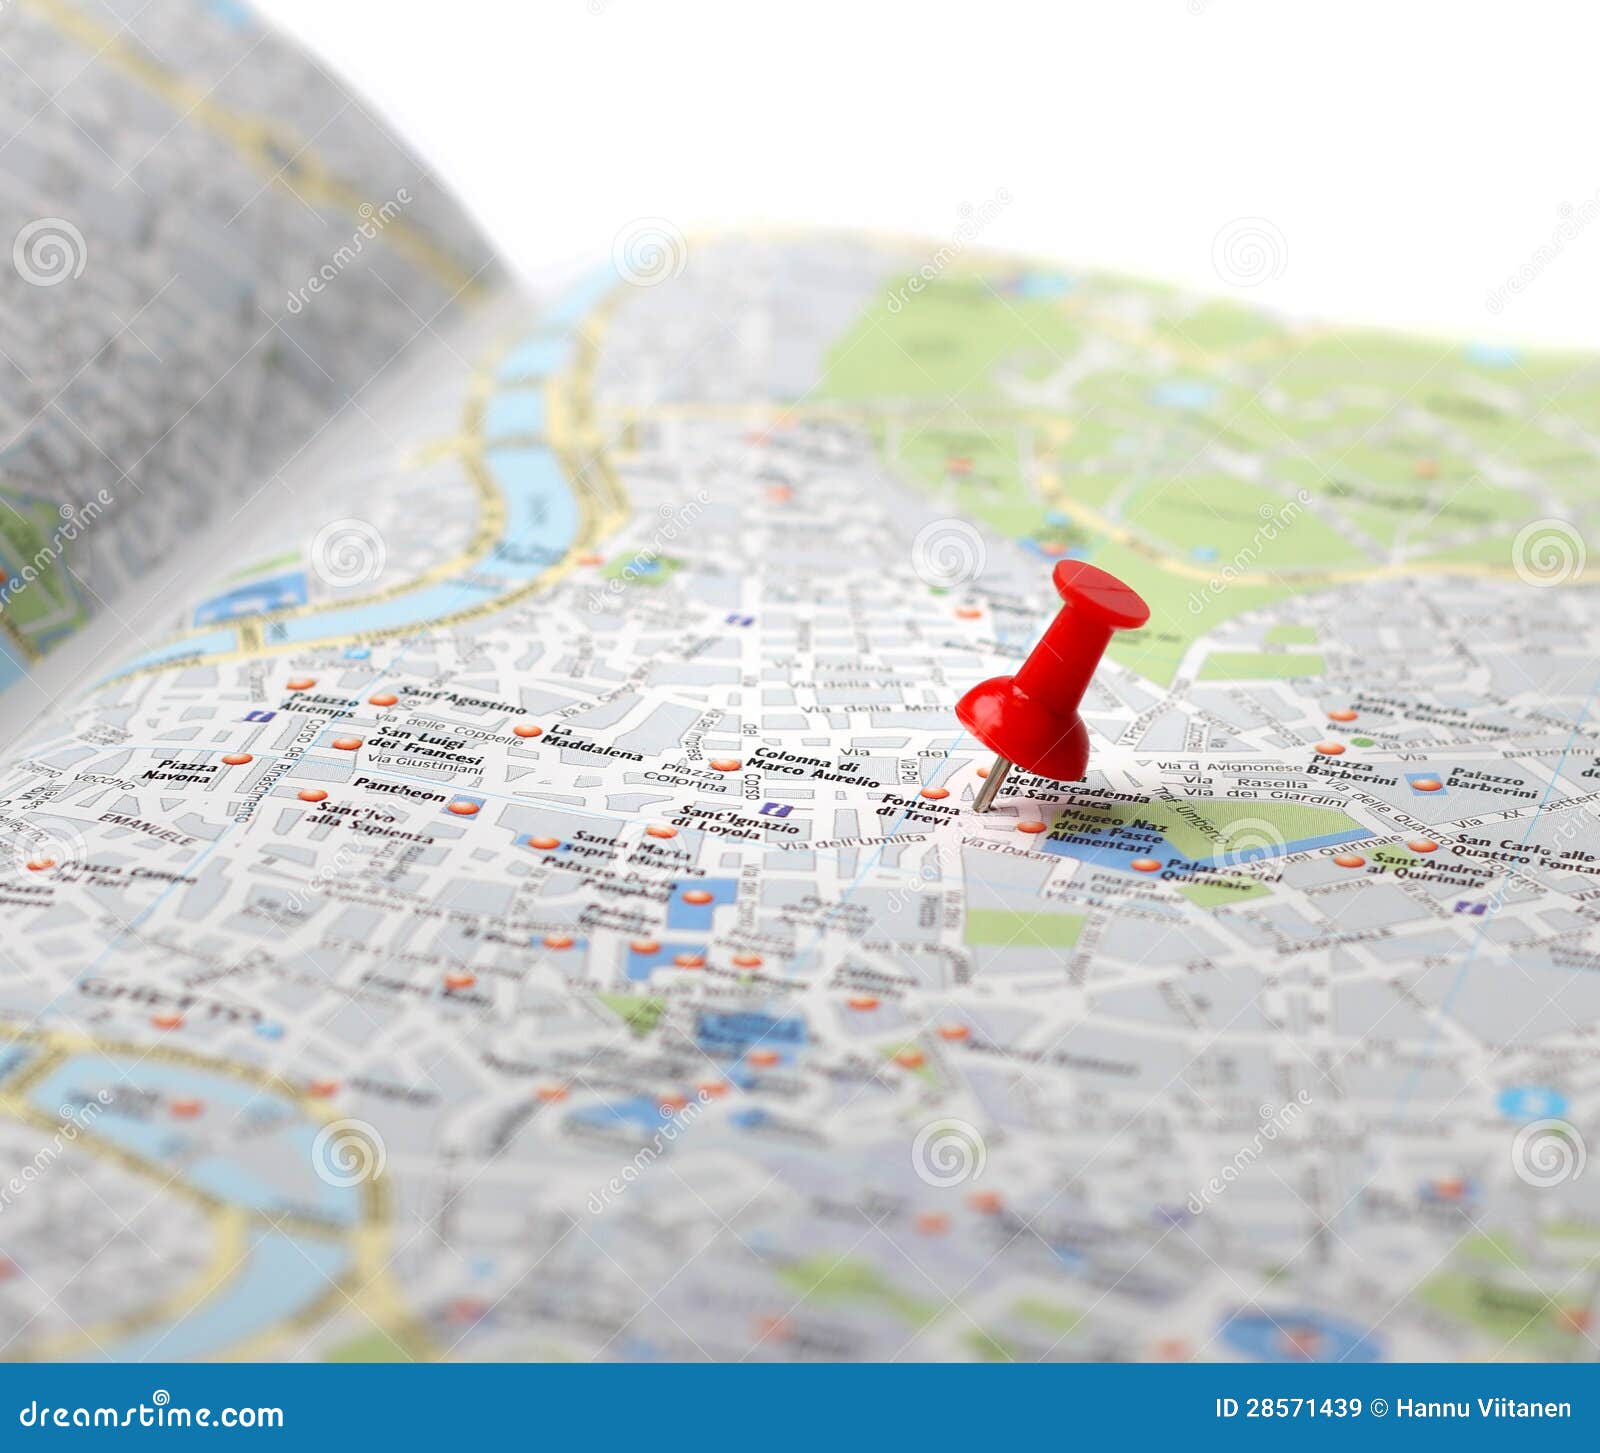 Mapa de viaje con pin de empuje mapa de Europa con pasadores para marcar viajes personaliza tu mapa de viaje producido en EU mapa de pasadores de empuje 53 x 73 cm diseño de colores creativos 